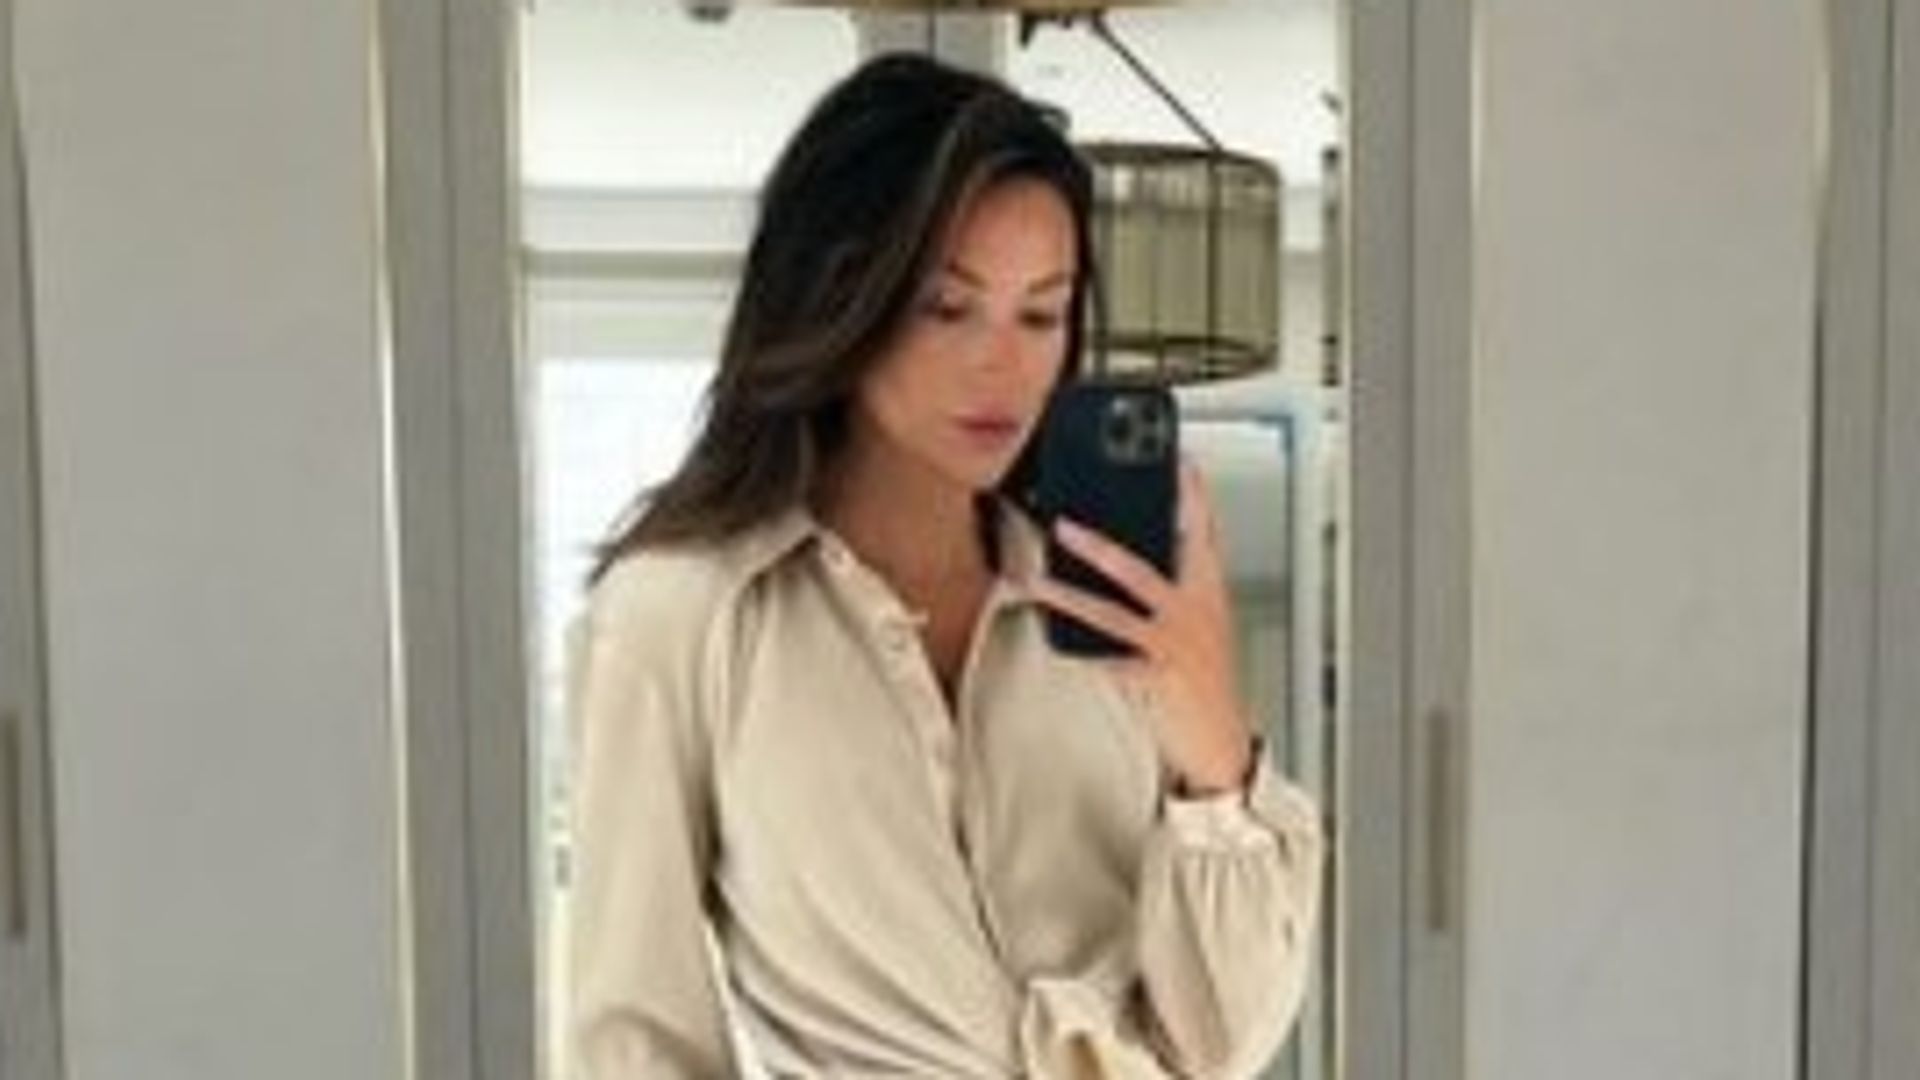 Michelle Keegan in Essex home dressing room taking selfie wearing beige coord